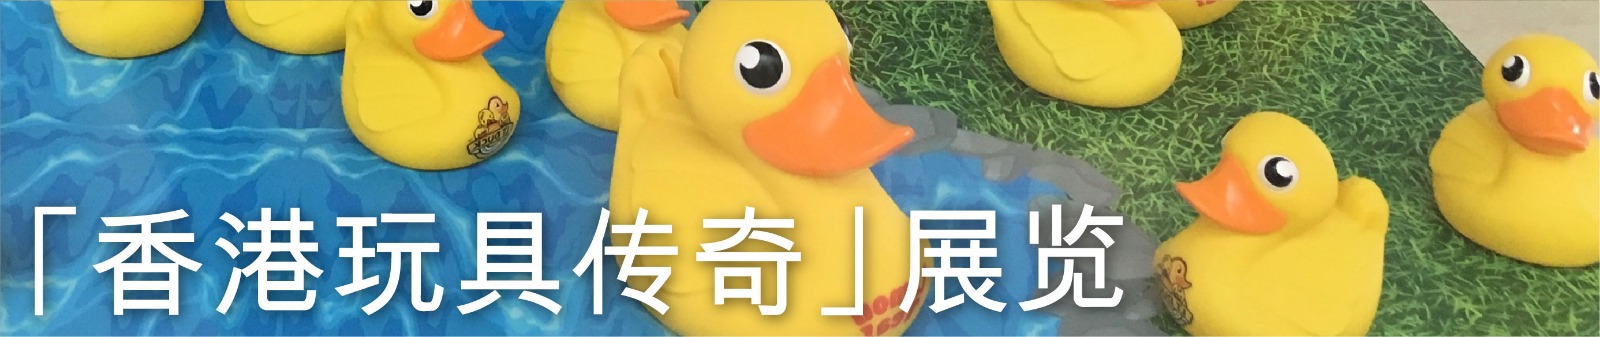 「香港玩具传奇」展览